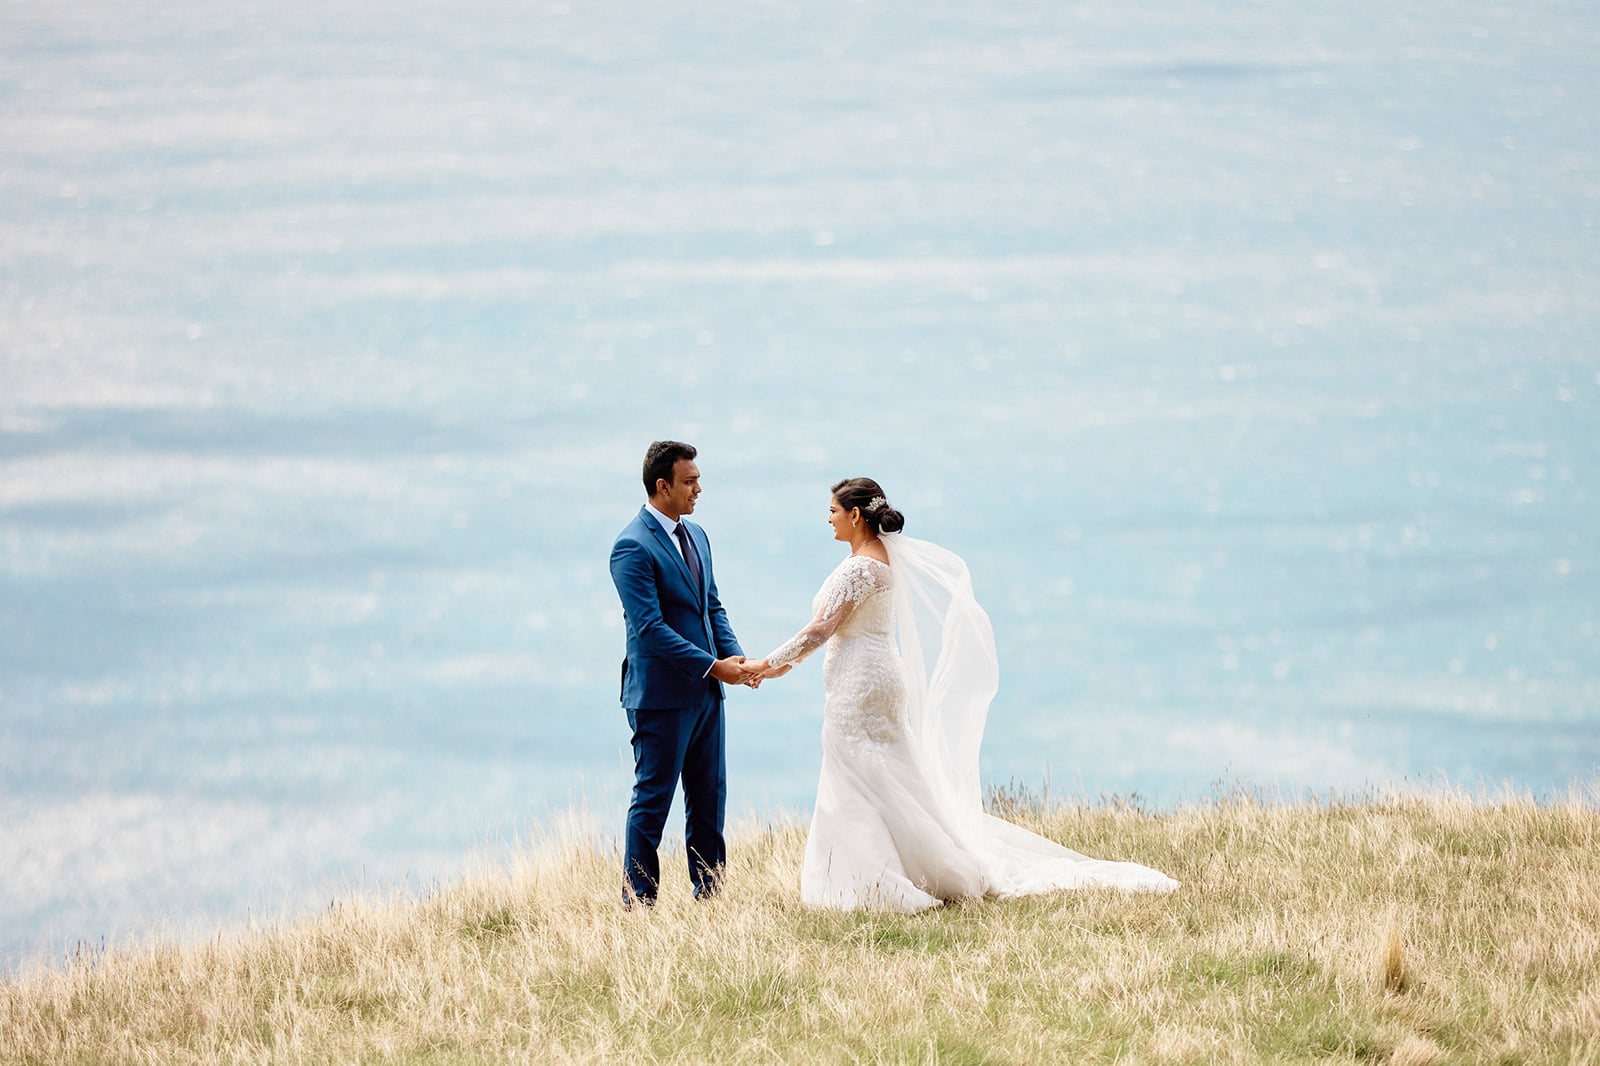 Indian Elopement Wedding in Queenstown New Zealand